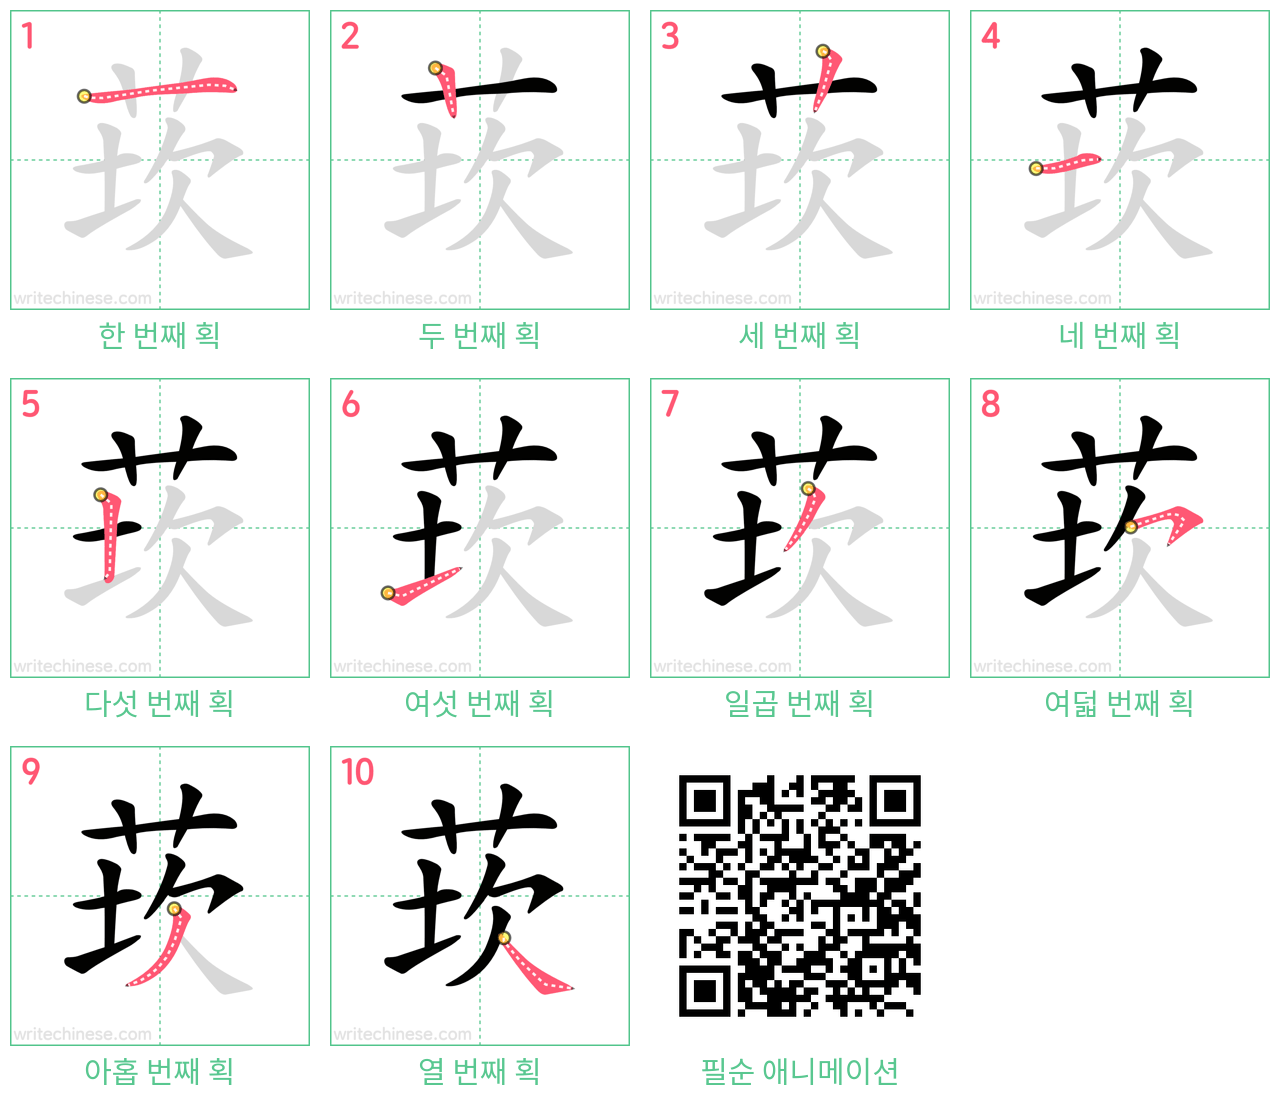 莰 step-by-step stroke order diagrams